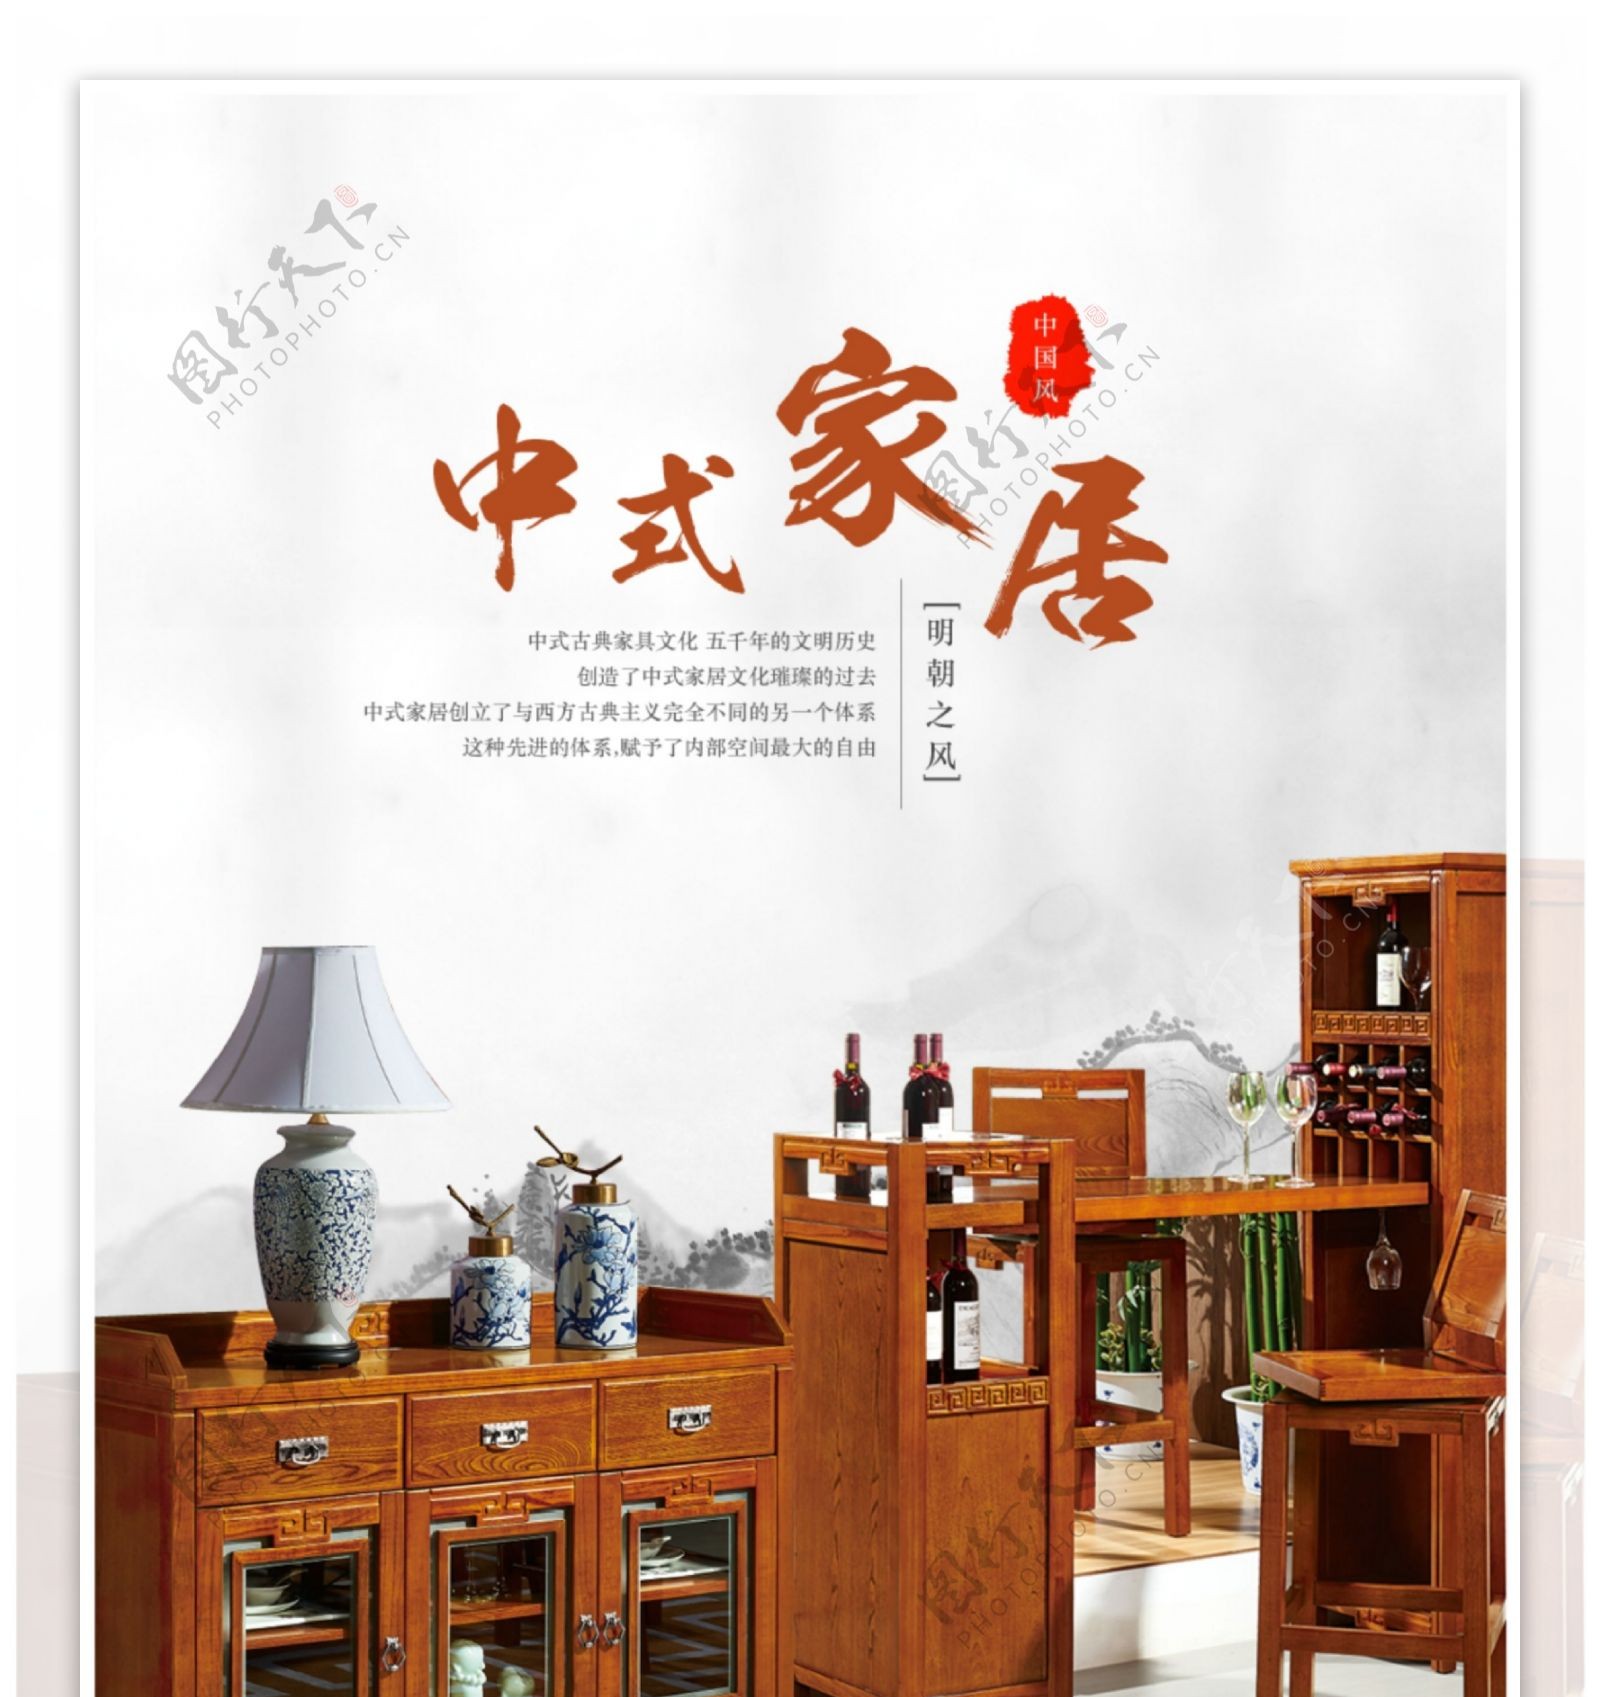 中式家具淘宝详情页